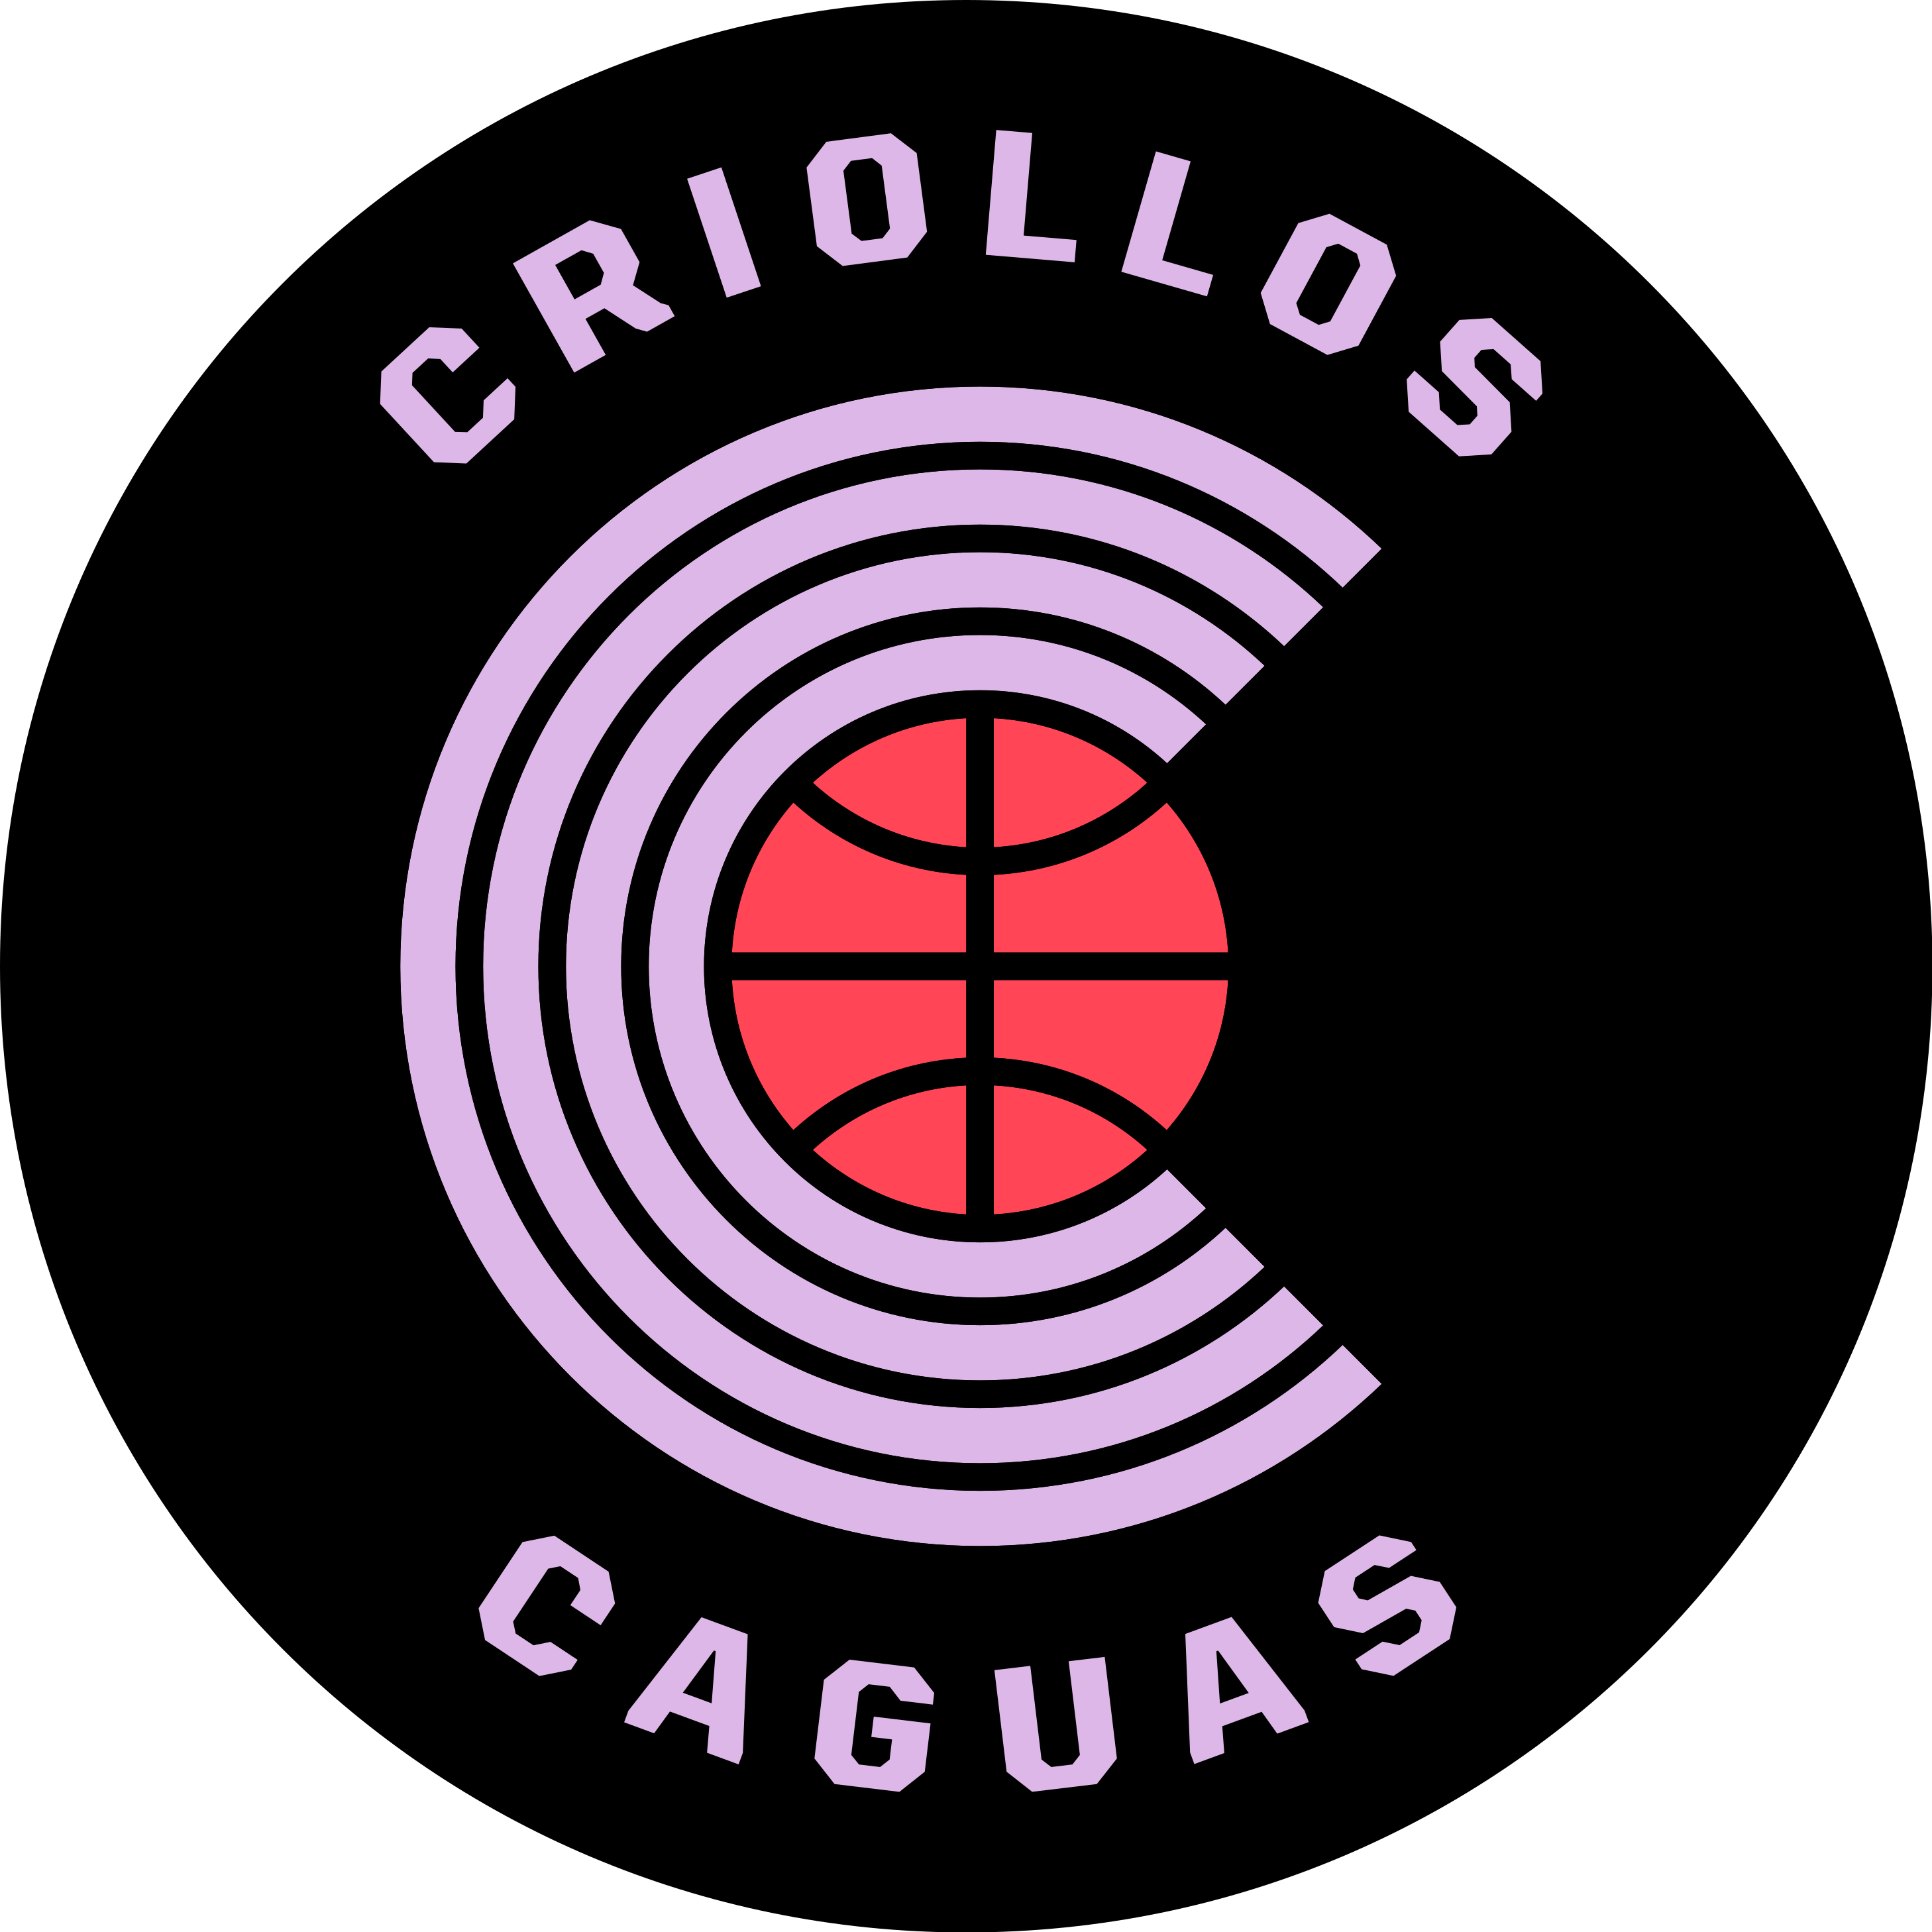 Escudo de los Criollos de Caguas